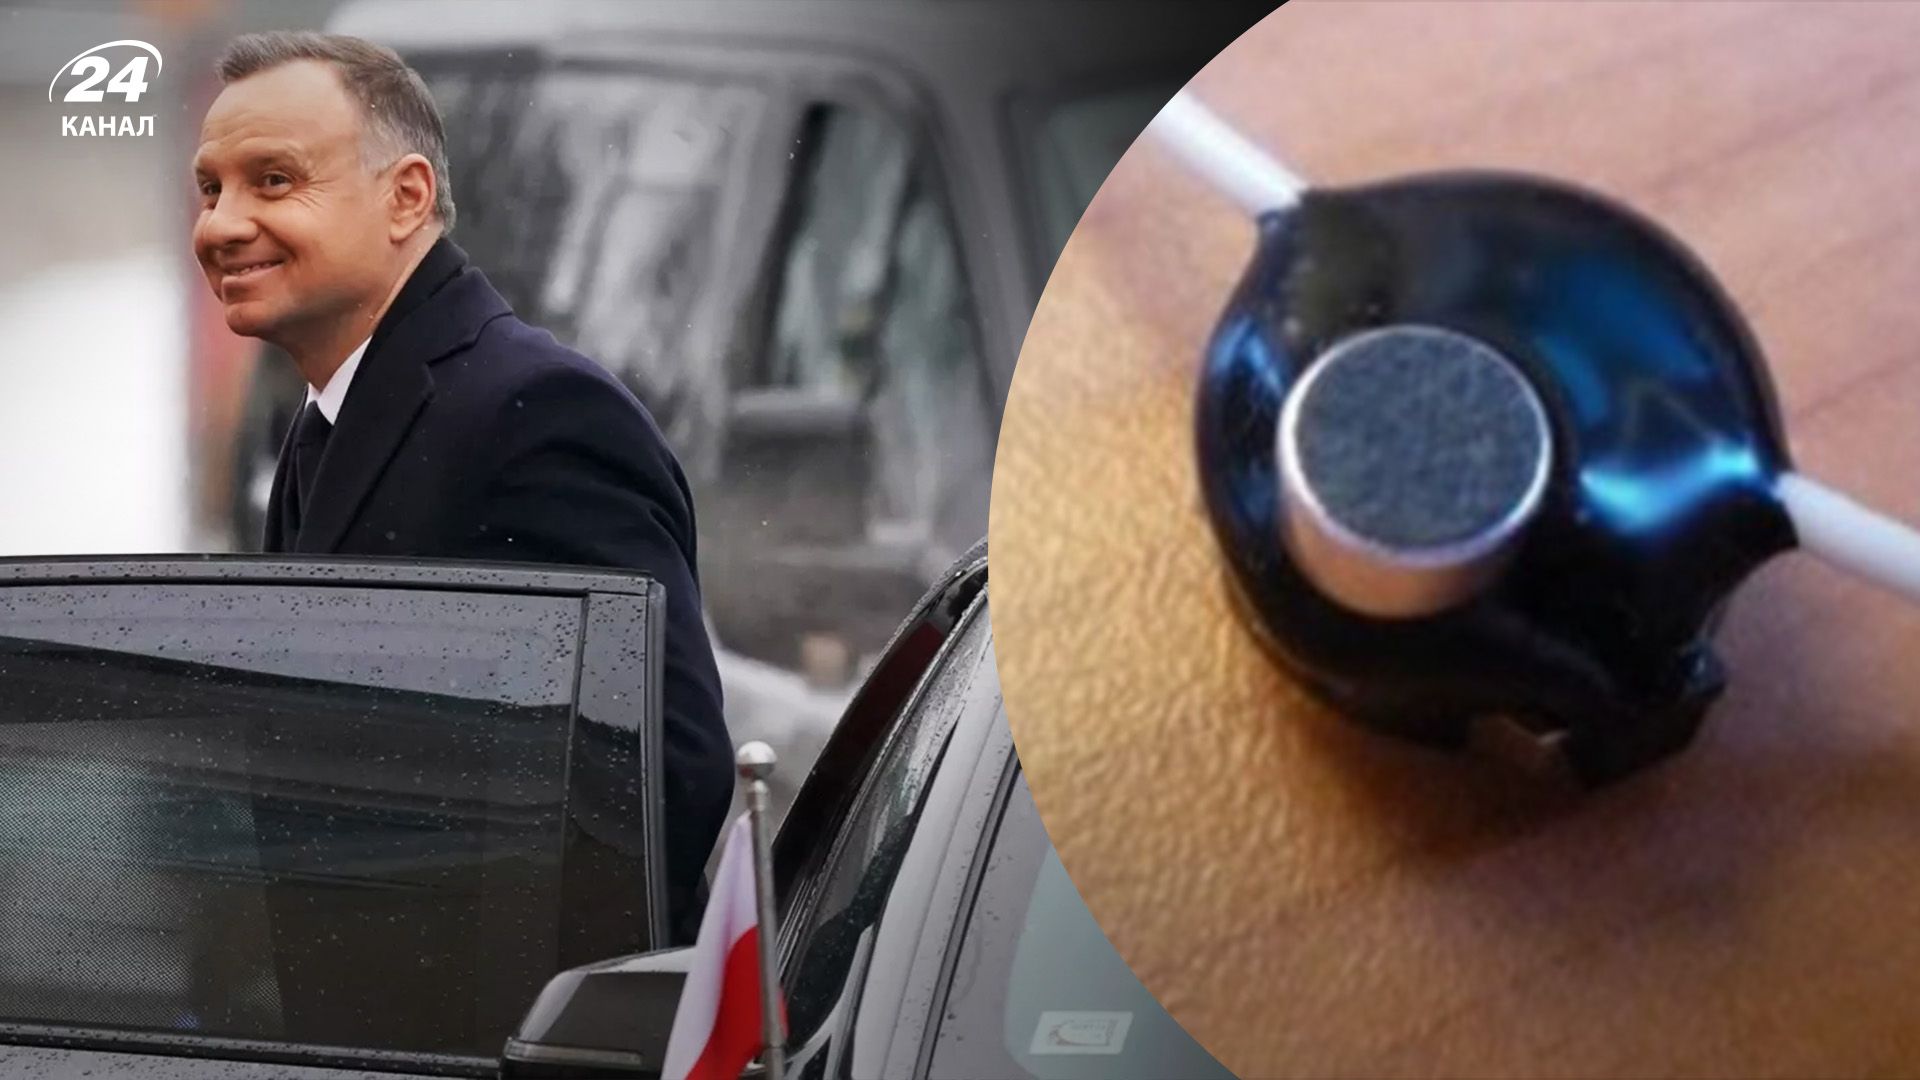 В автомобиле кортежа президента Польши нашли жучок - детали расследования - 24 Канал